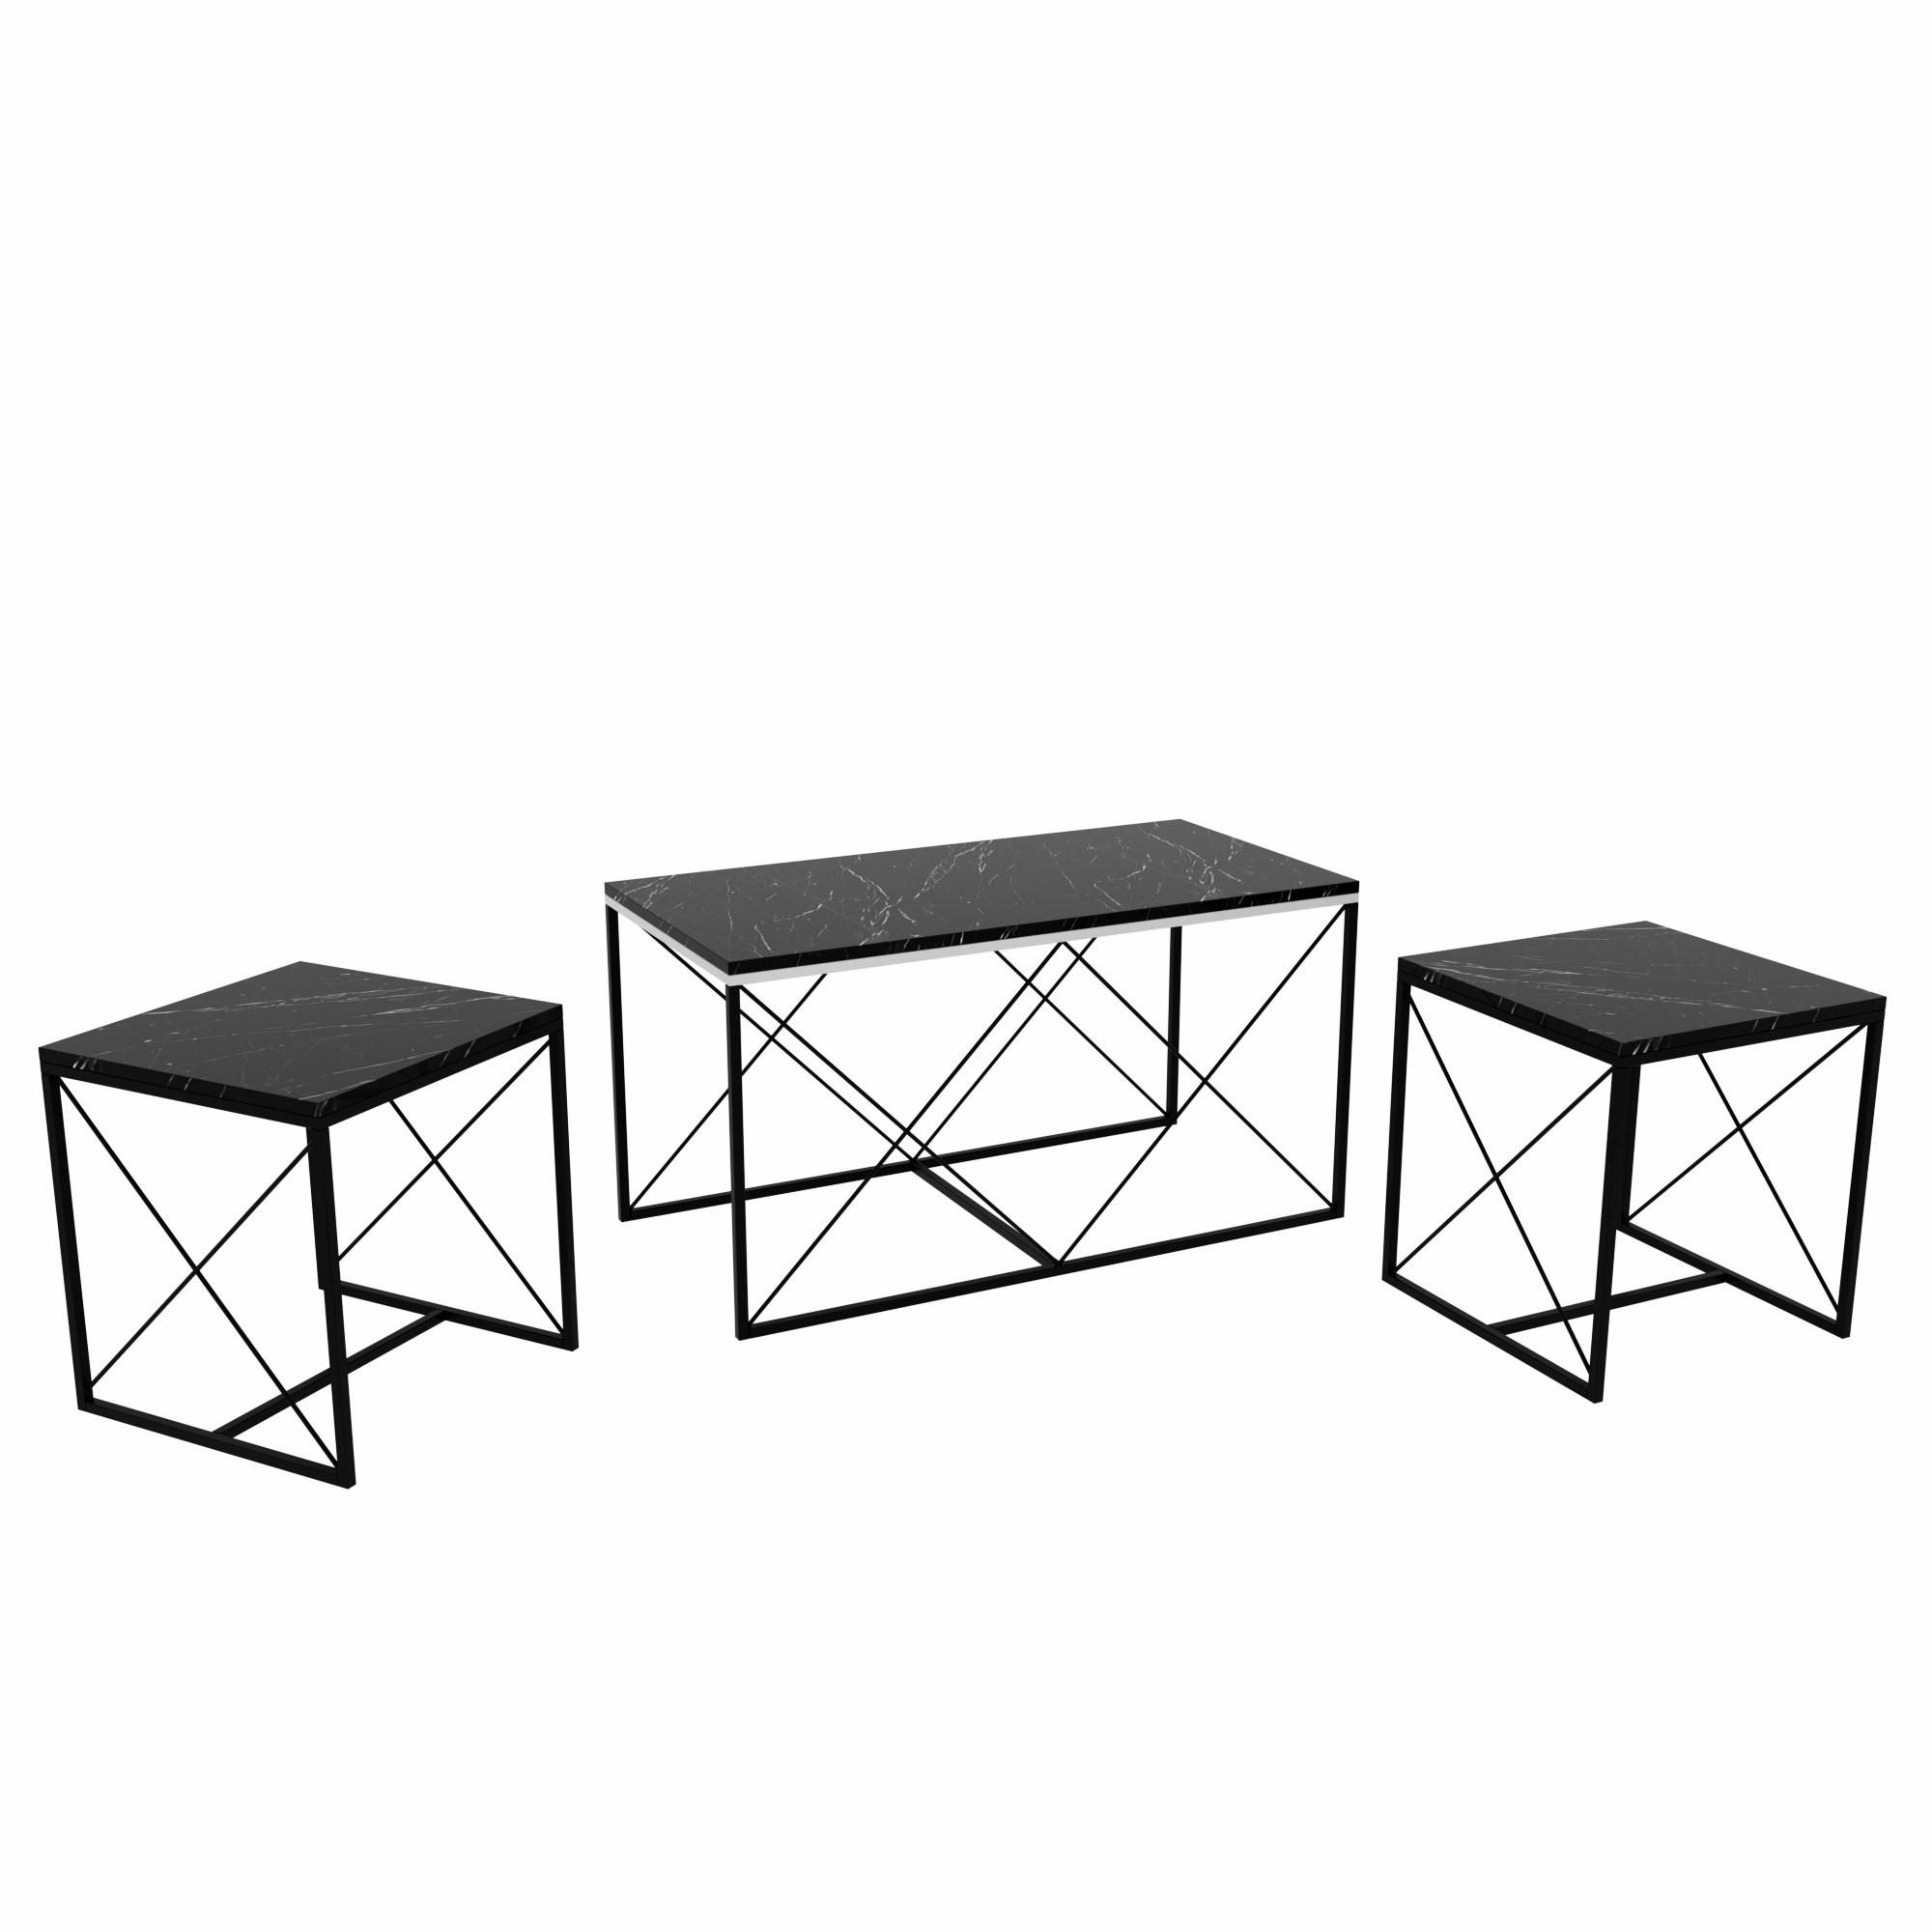 Lote de 3 mesas de centro nido Langkawa de estilo industrial en metal negro y madera efecto mármol negra